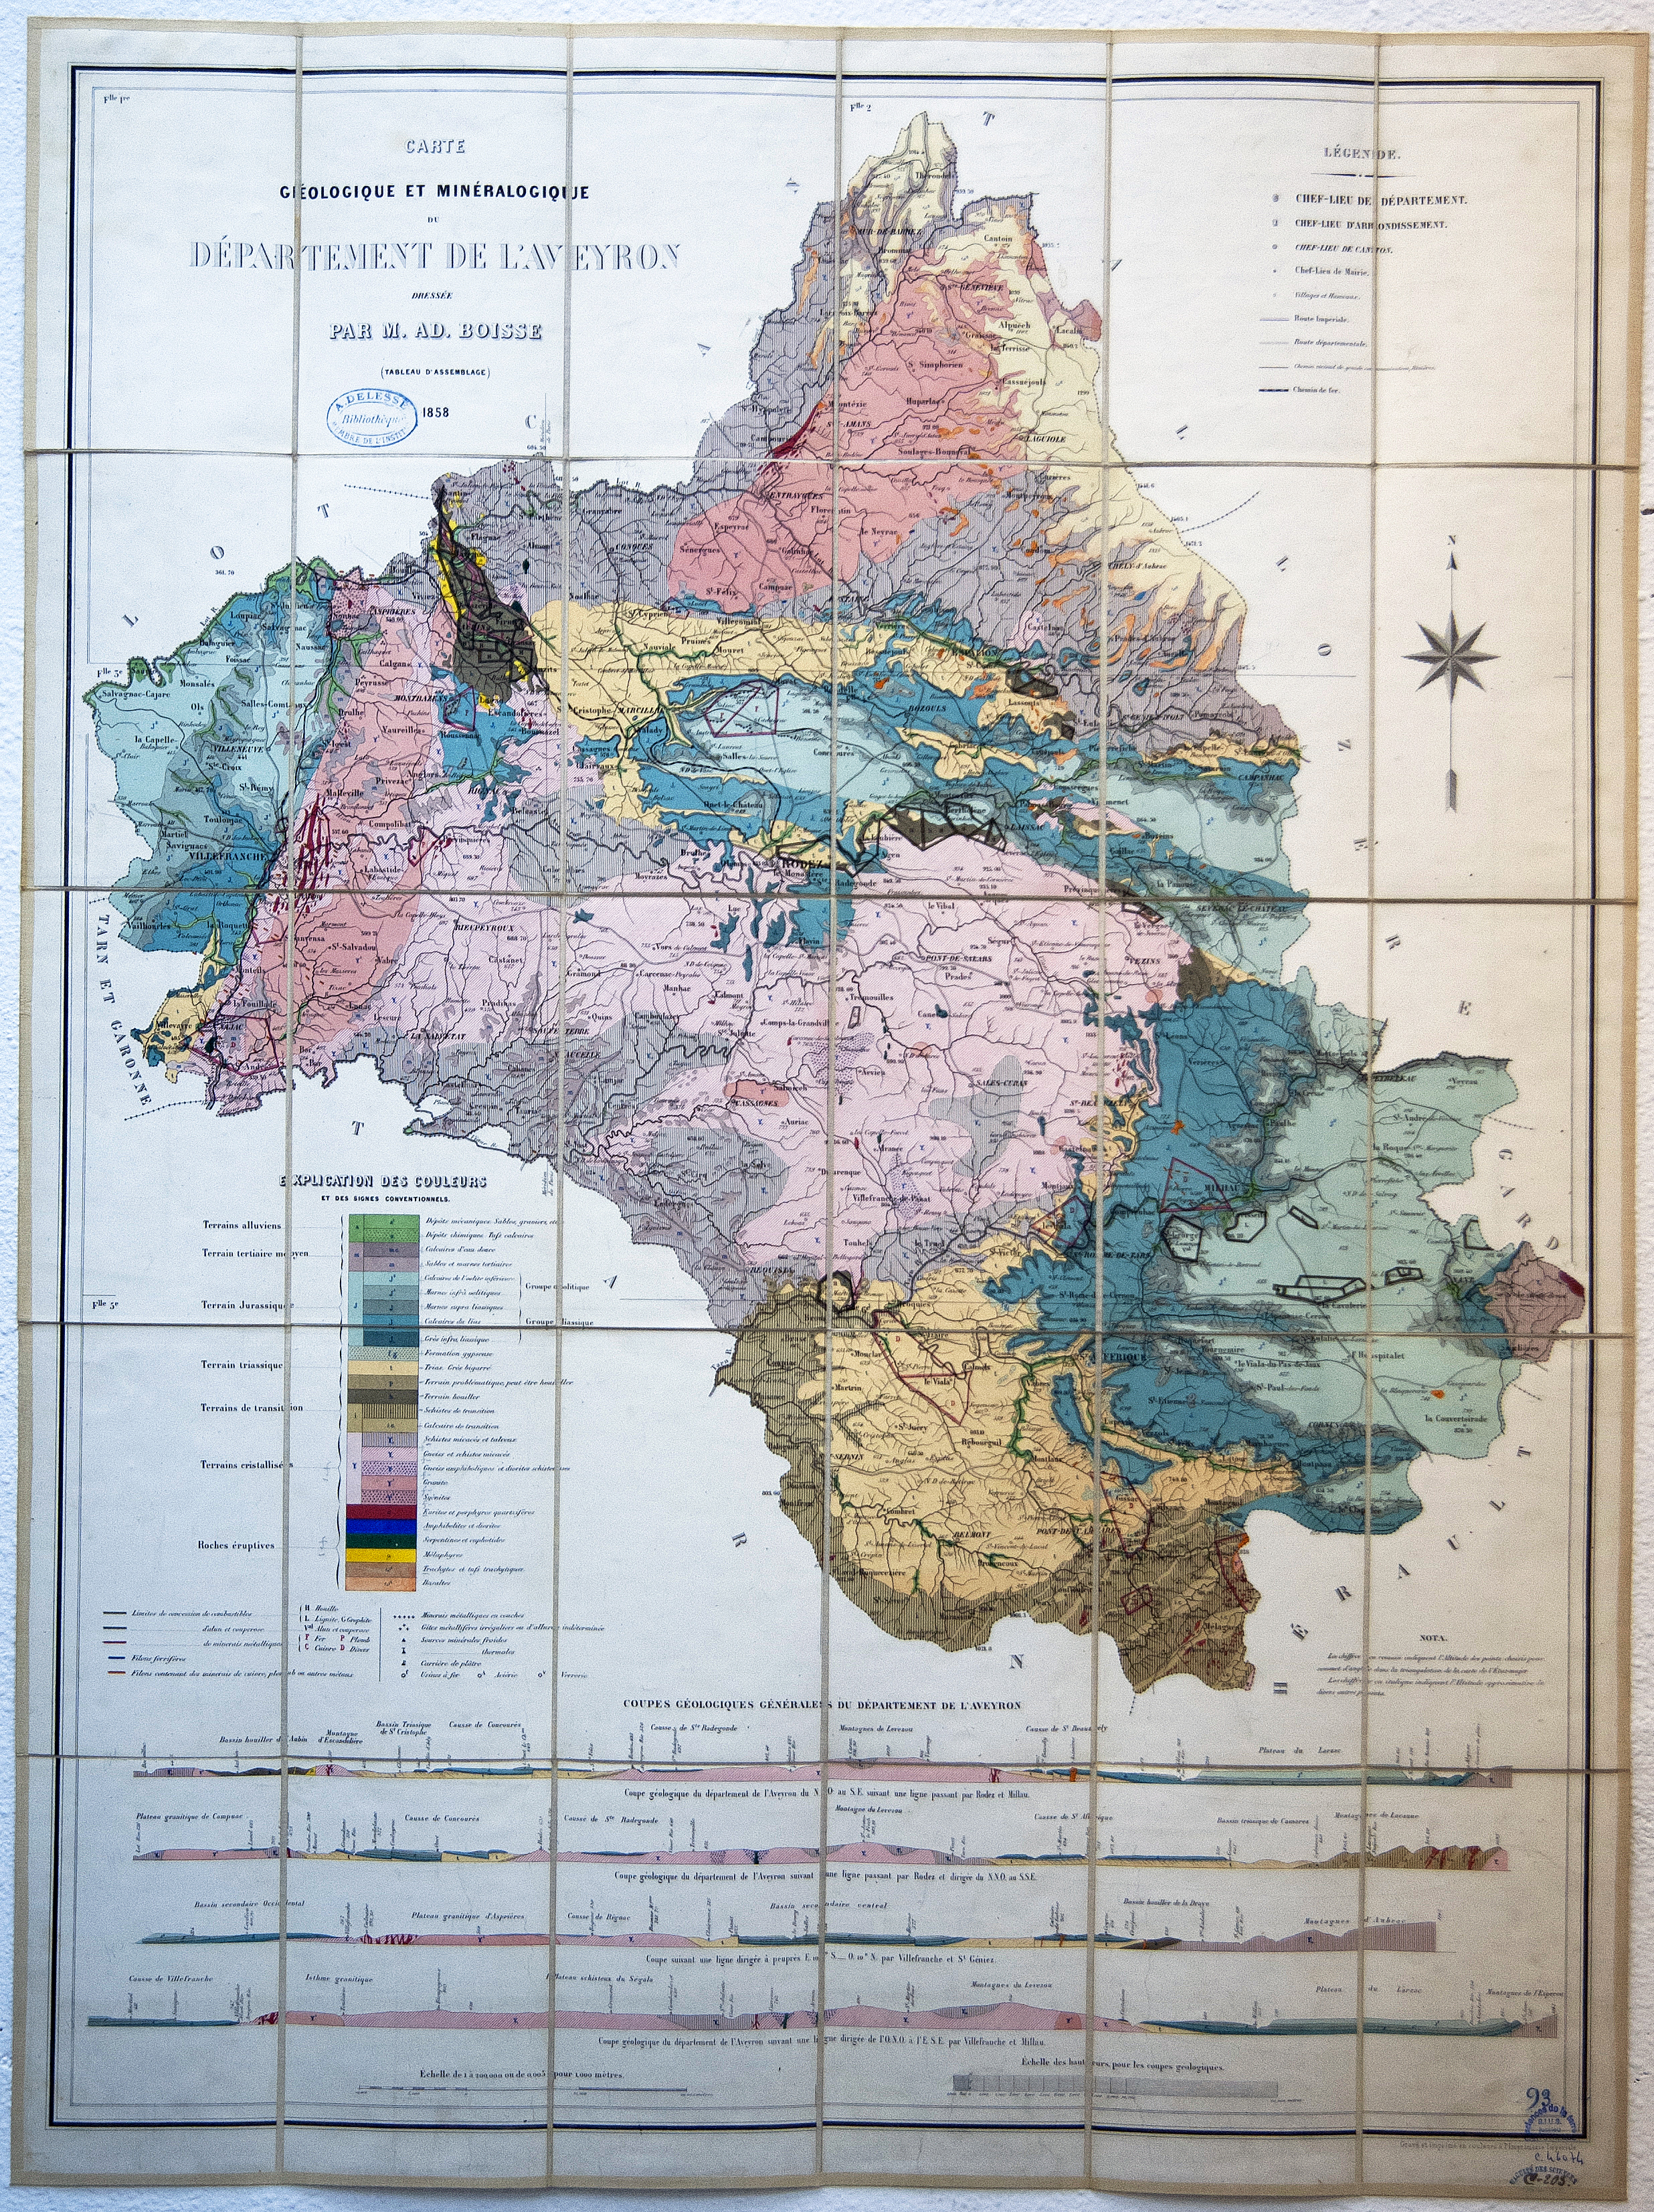 [MUSEALIA] Carte géologique et minéralogique du département de l’Aveyron (1858)